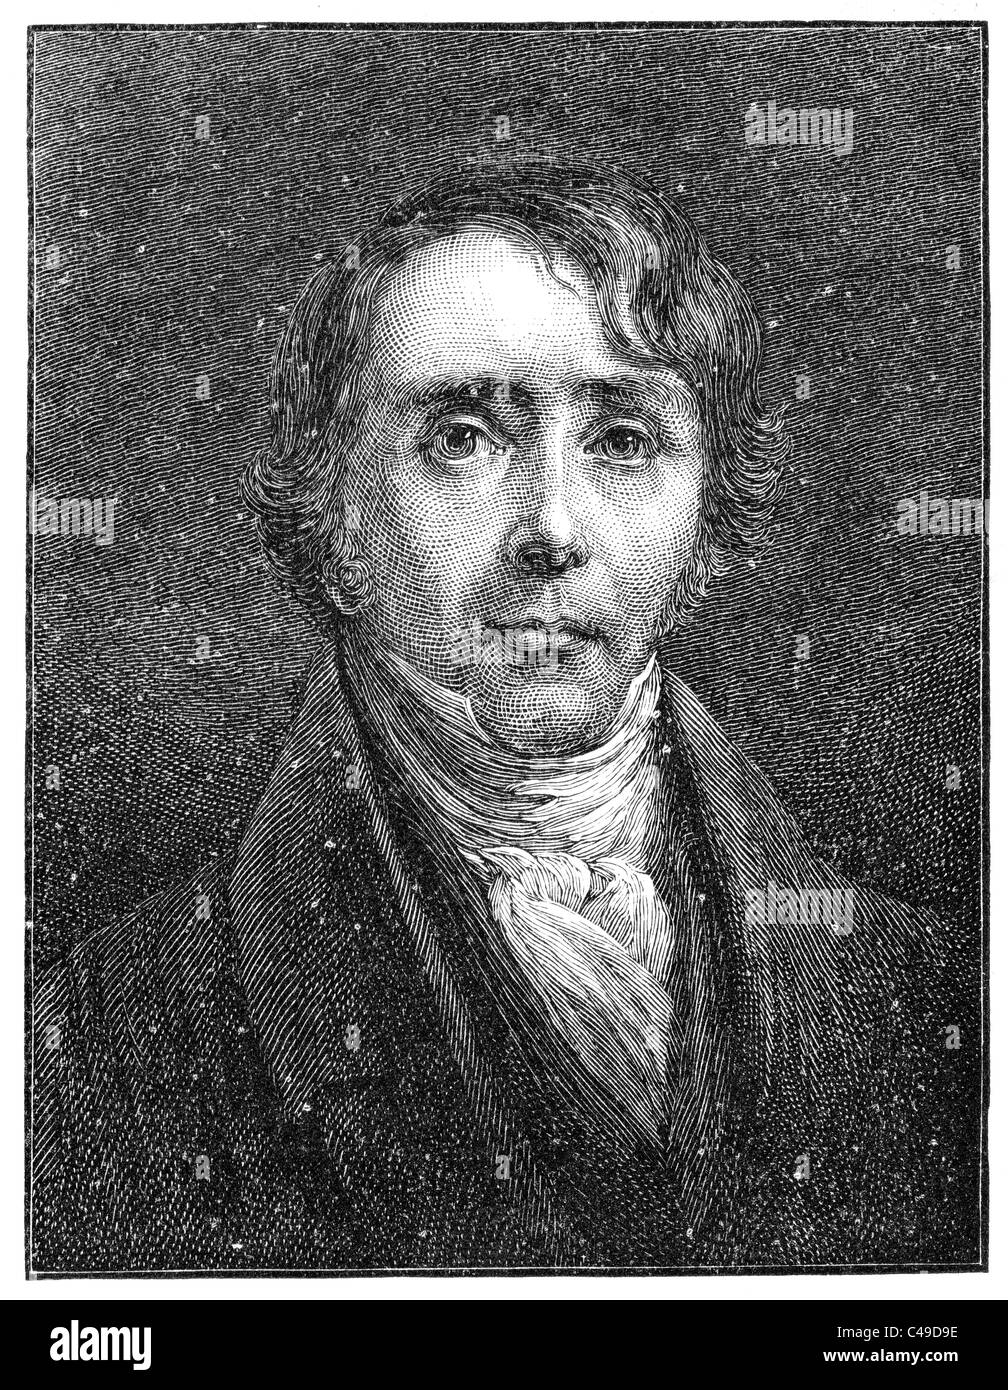 Le Dr William Ellery Channing (1780-1842) était le premier prédicateur unitaire aux États-Unis au début du xixe siècle Banque D'Images